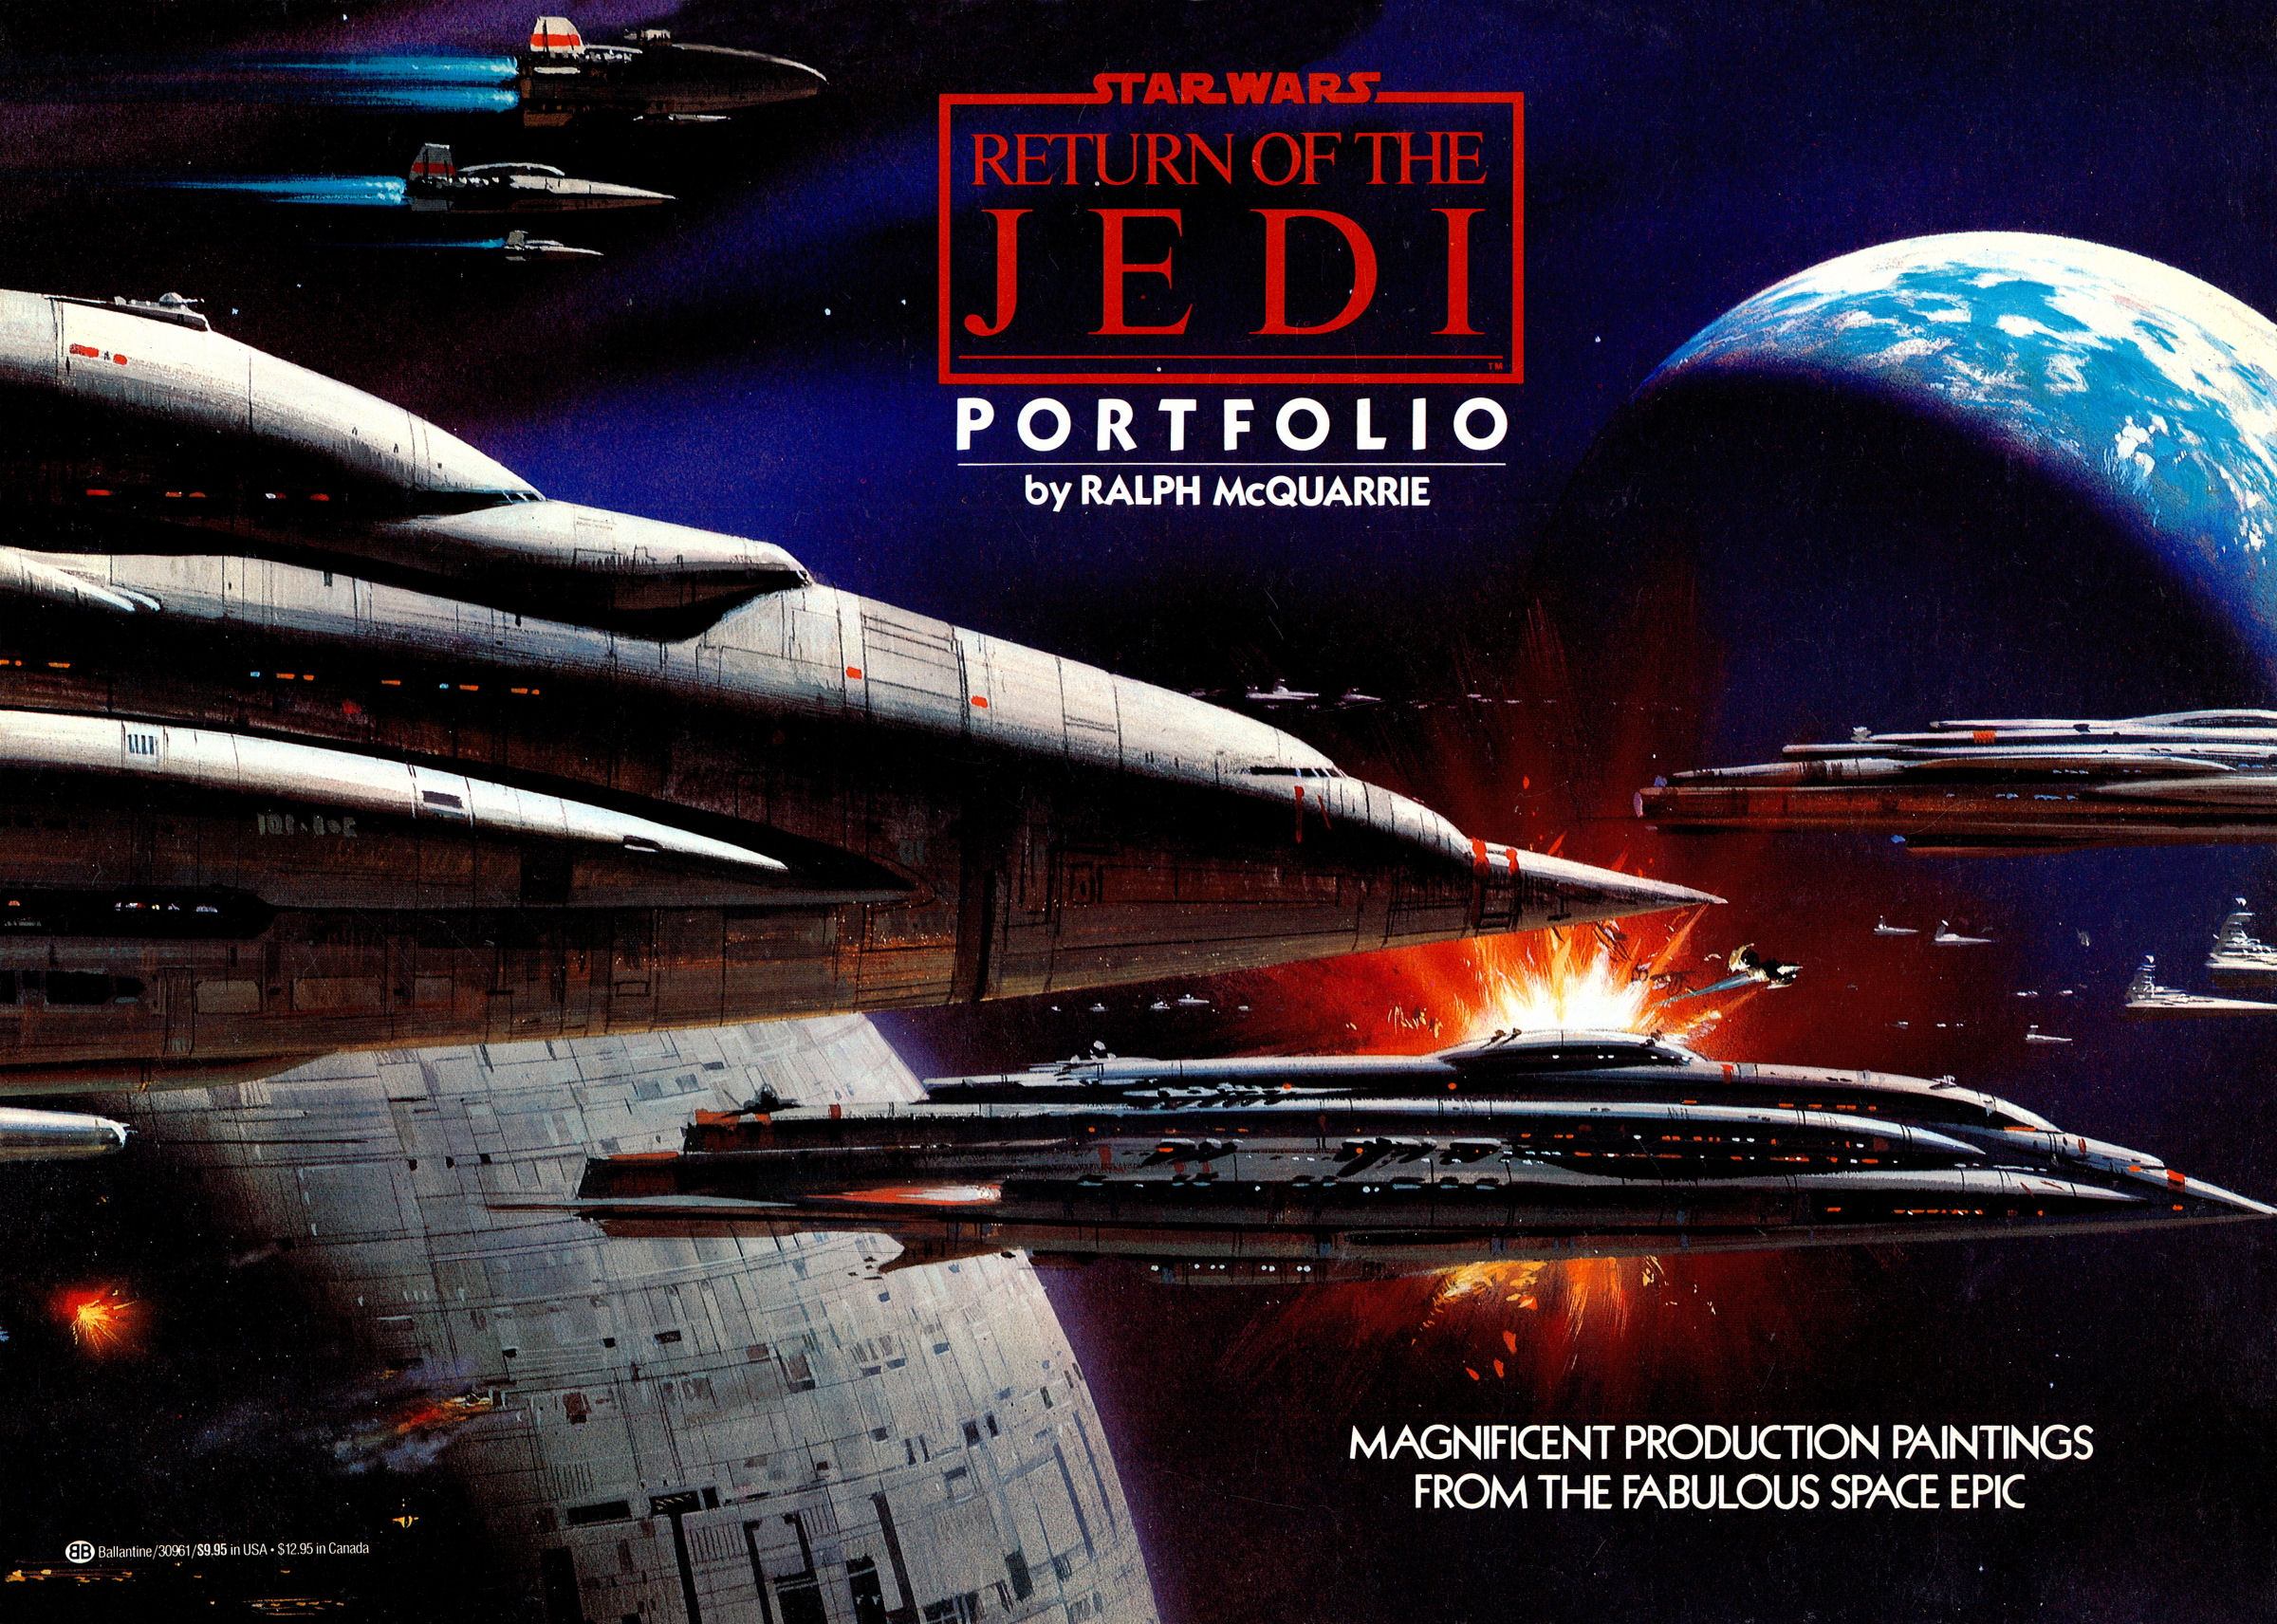 Star Wars: Return of the Jedi Portfolio